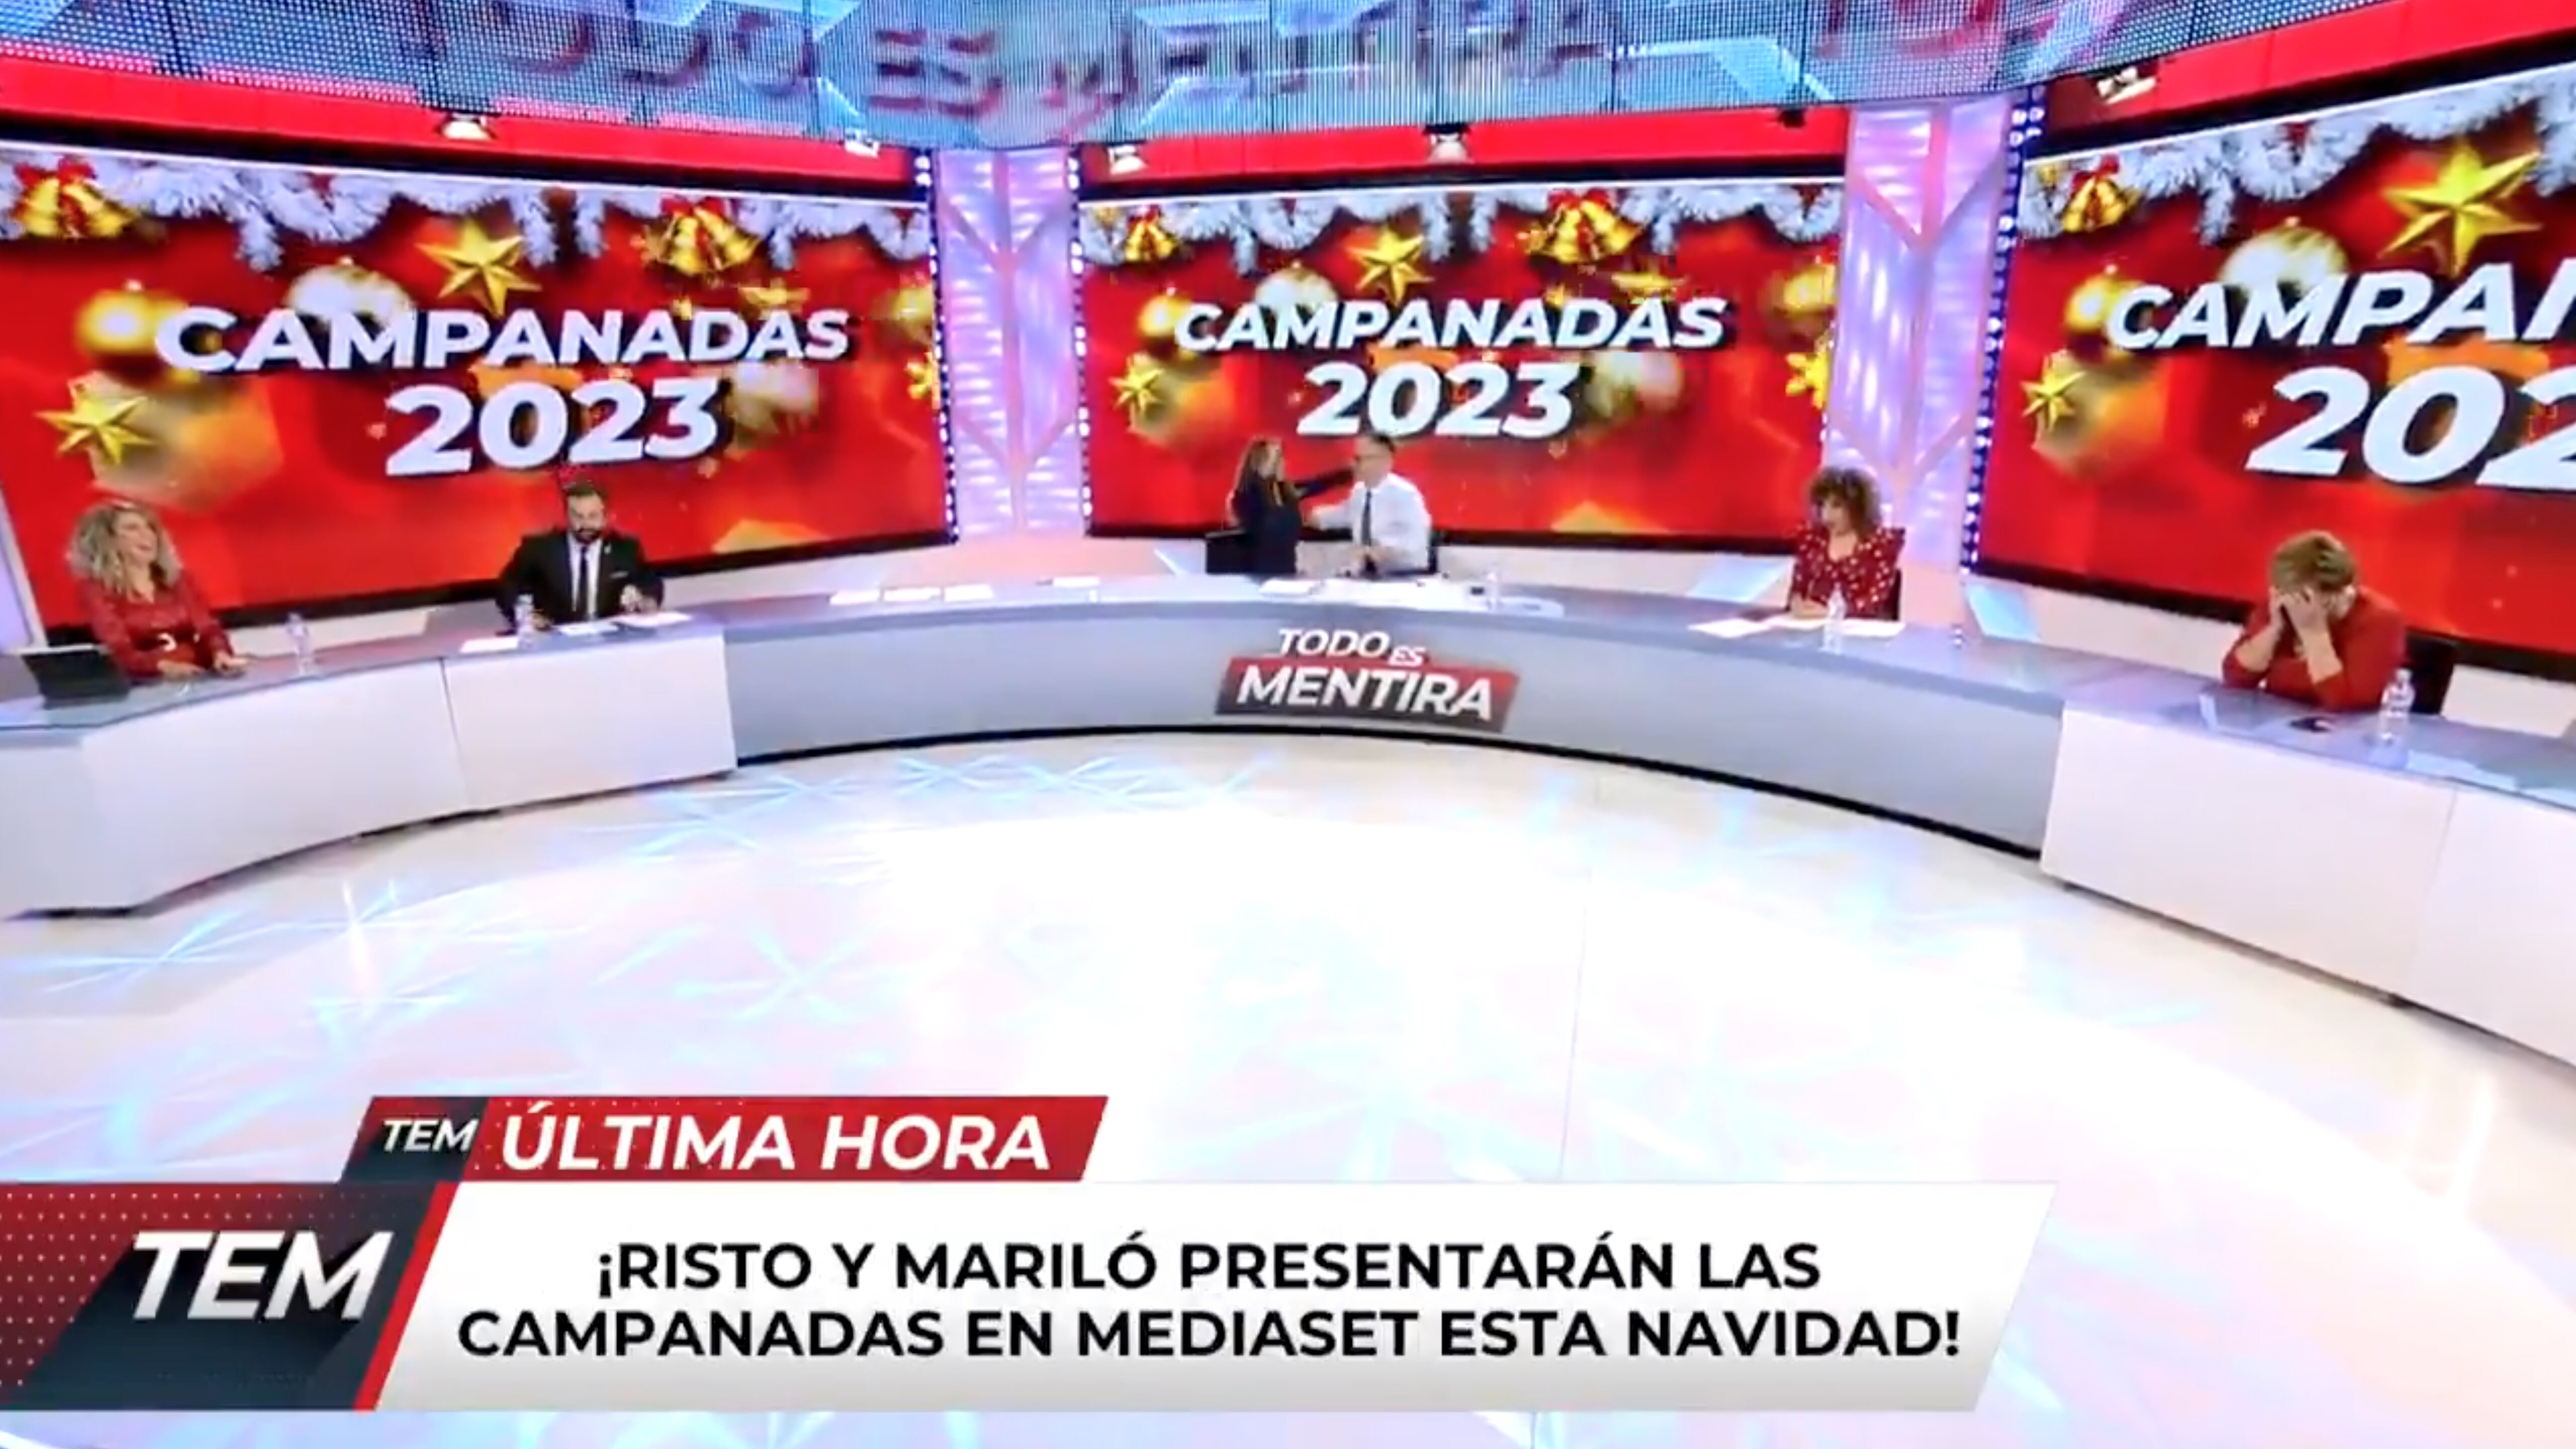 Risto Mejide y Mariló Montero han anunciado ellos mismos que darán las Campanadas | Foto: Telecinco.es